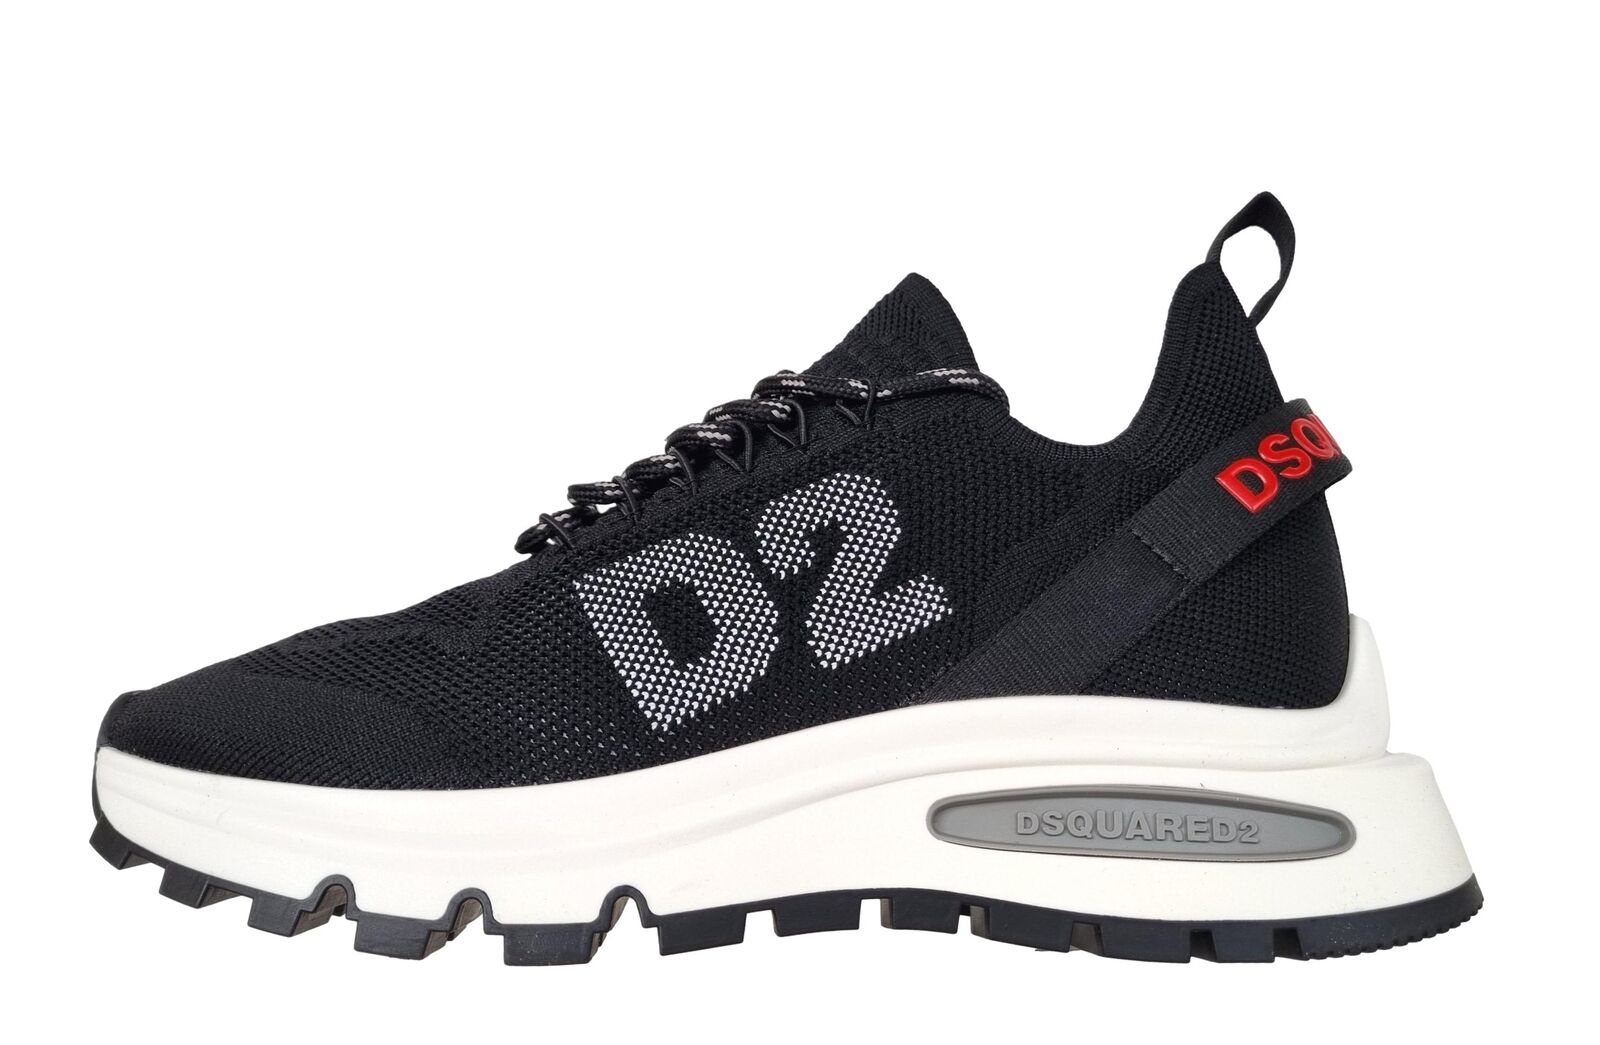 DSQUARED2 Schuhe sneakers Herren RUNDS2 2124 Schwarz-Rot | eBay